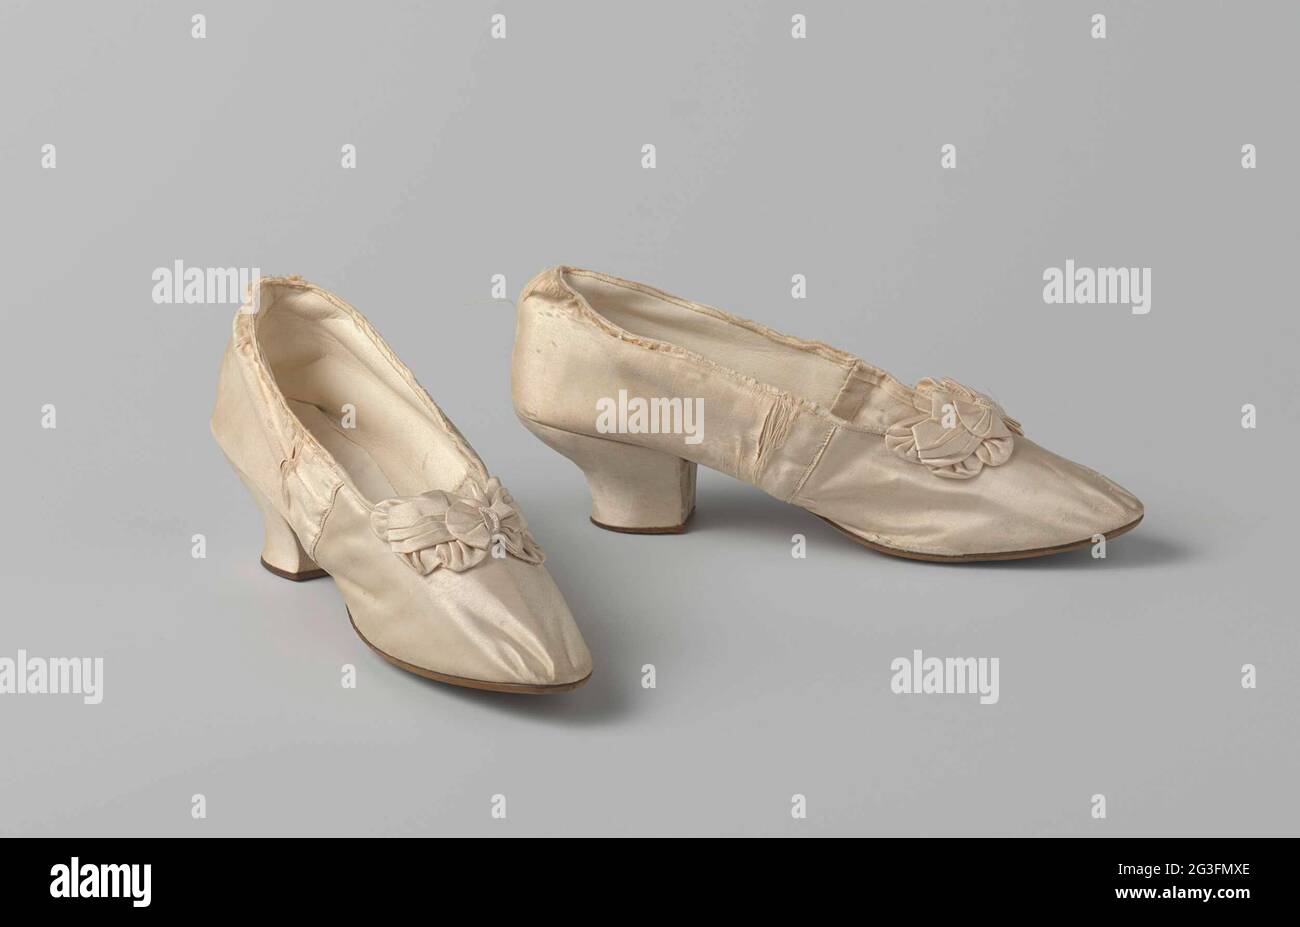 Chaussure pour femme en satin blanc ivoire avec noeud à boucles multiples  et perles de verre du milieu. Chaussure pour femme en satin blanc ivoire.  Modèle : nez arrondi, une plaque et